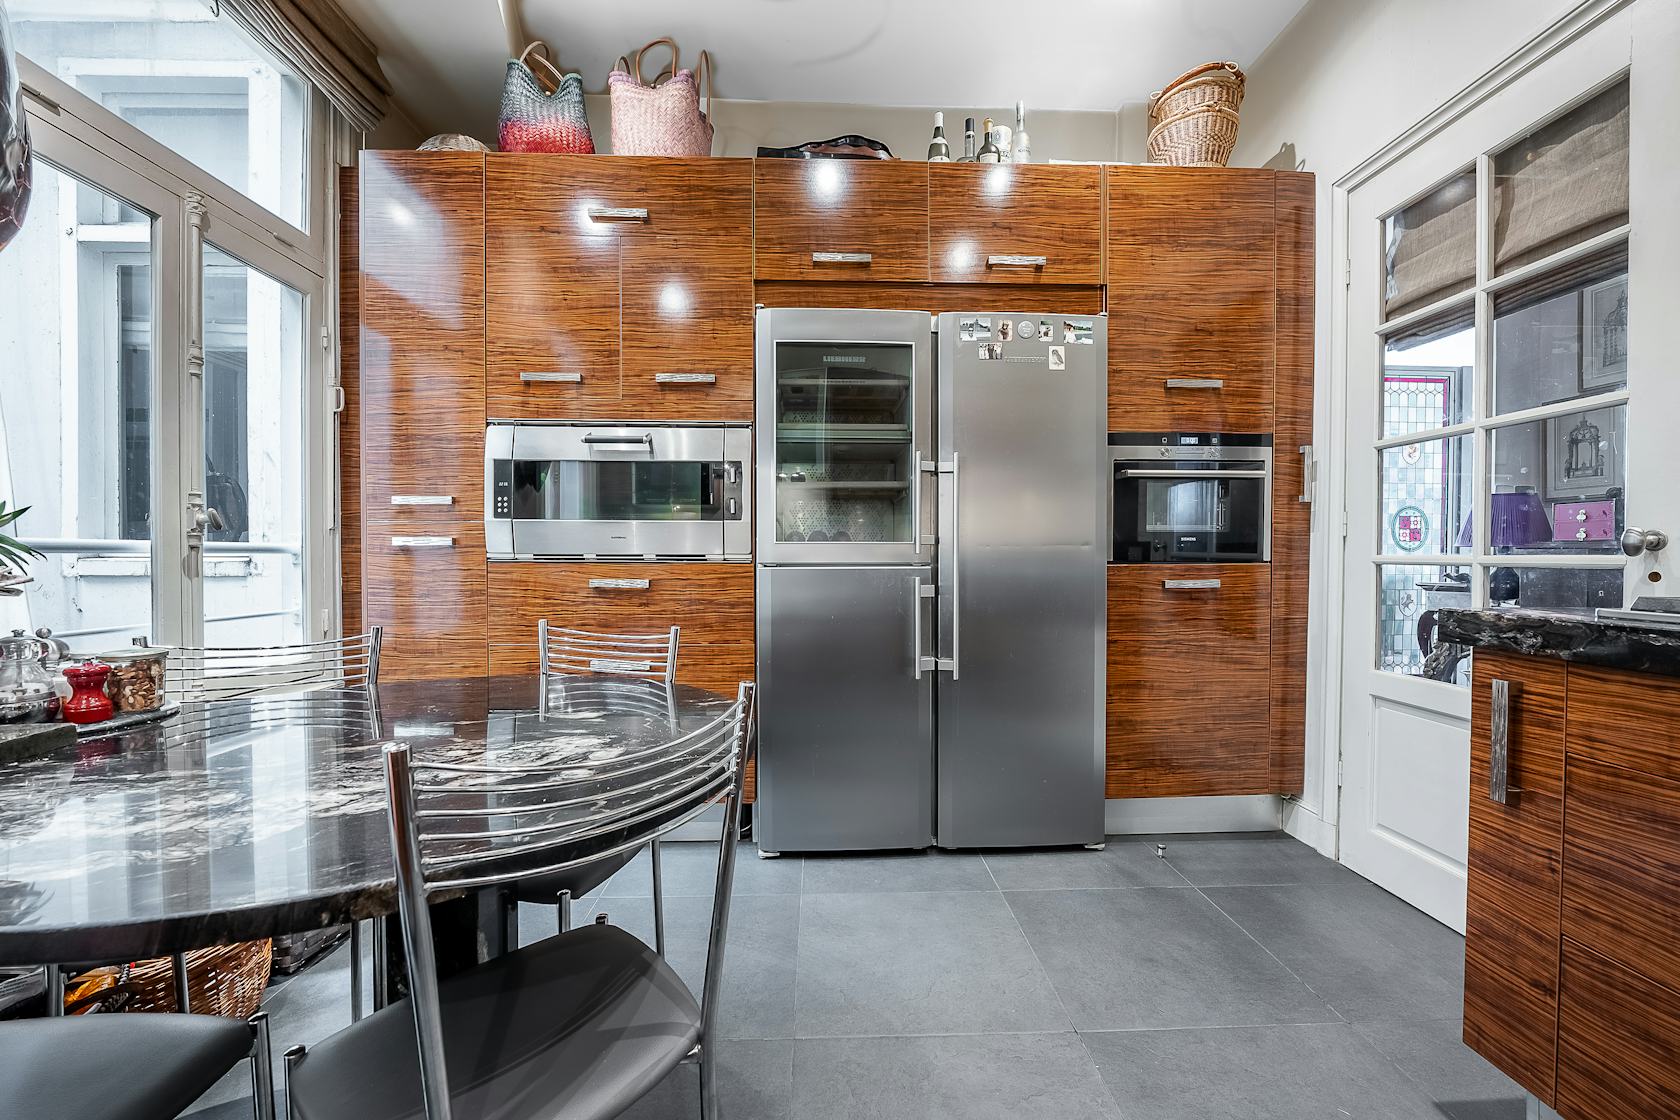 indoors interior design wood kitchen floor hardwood microwave oven flooring refrigerator